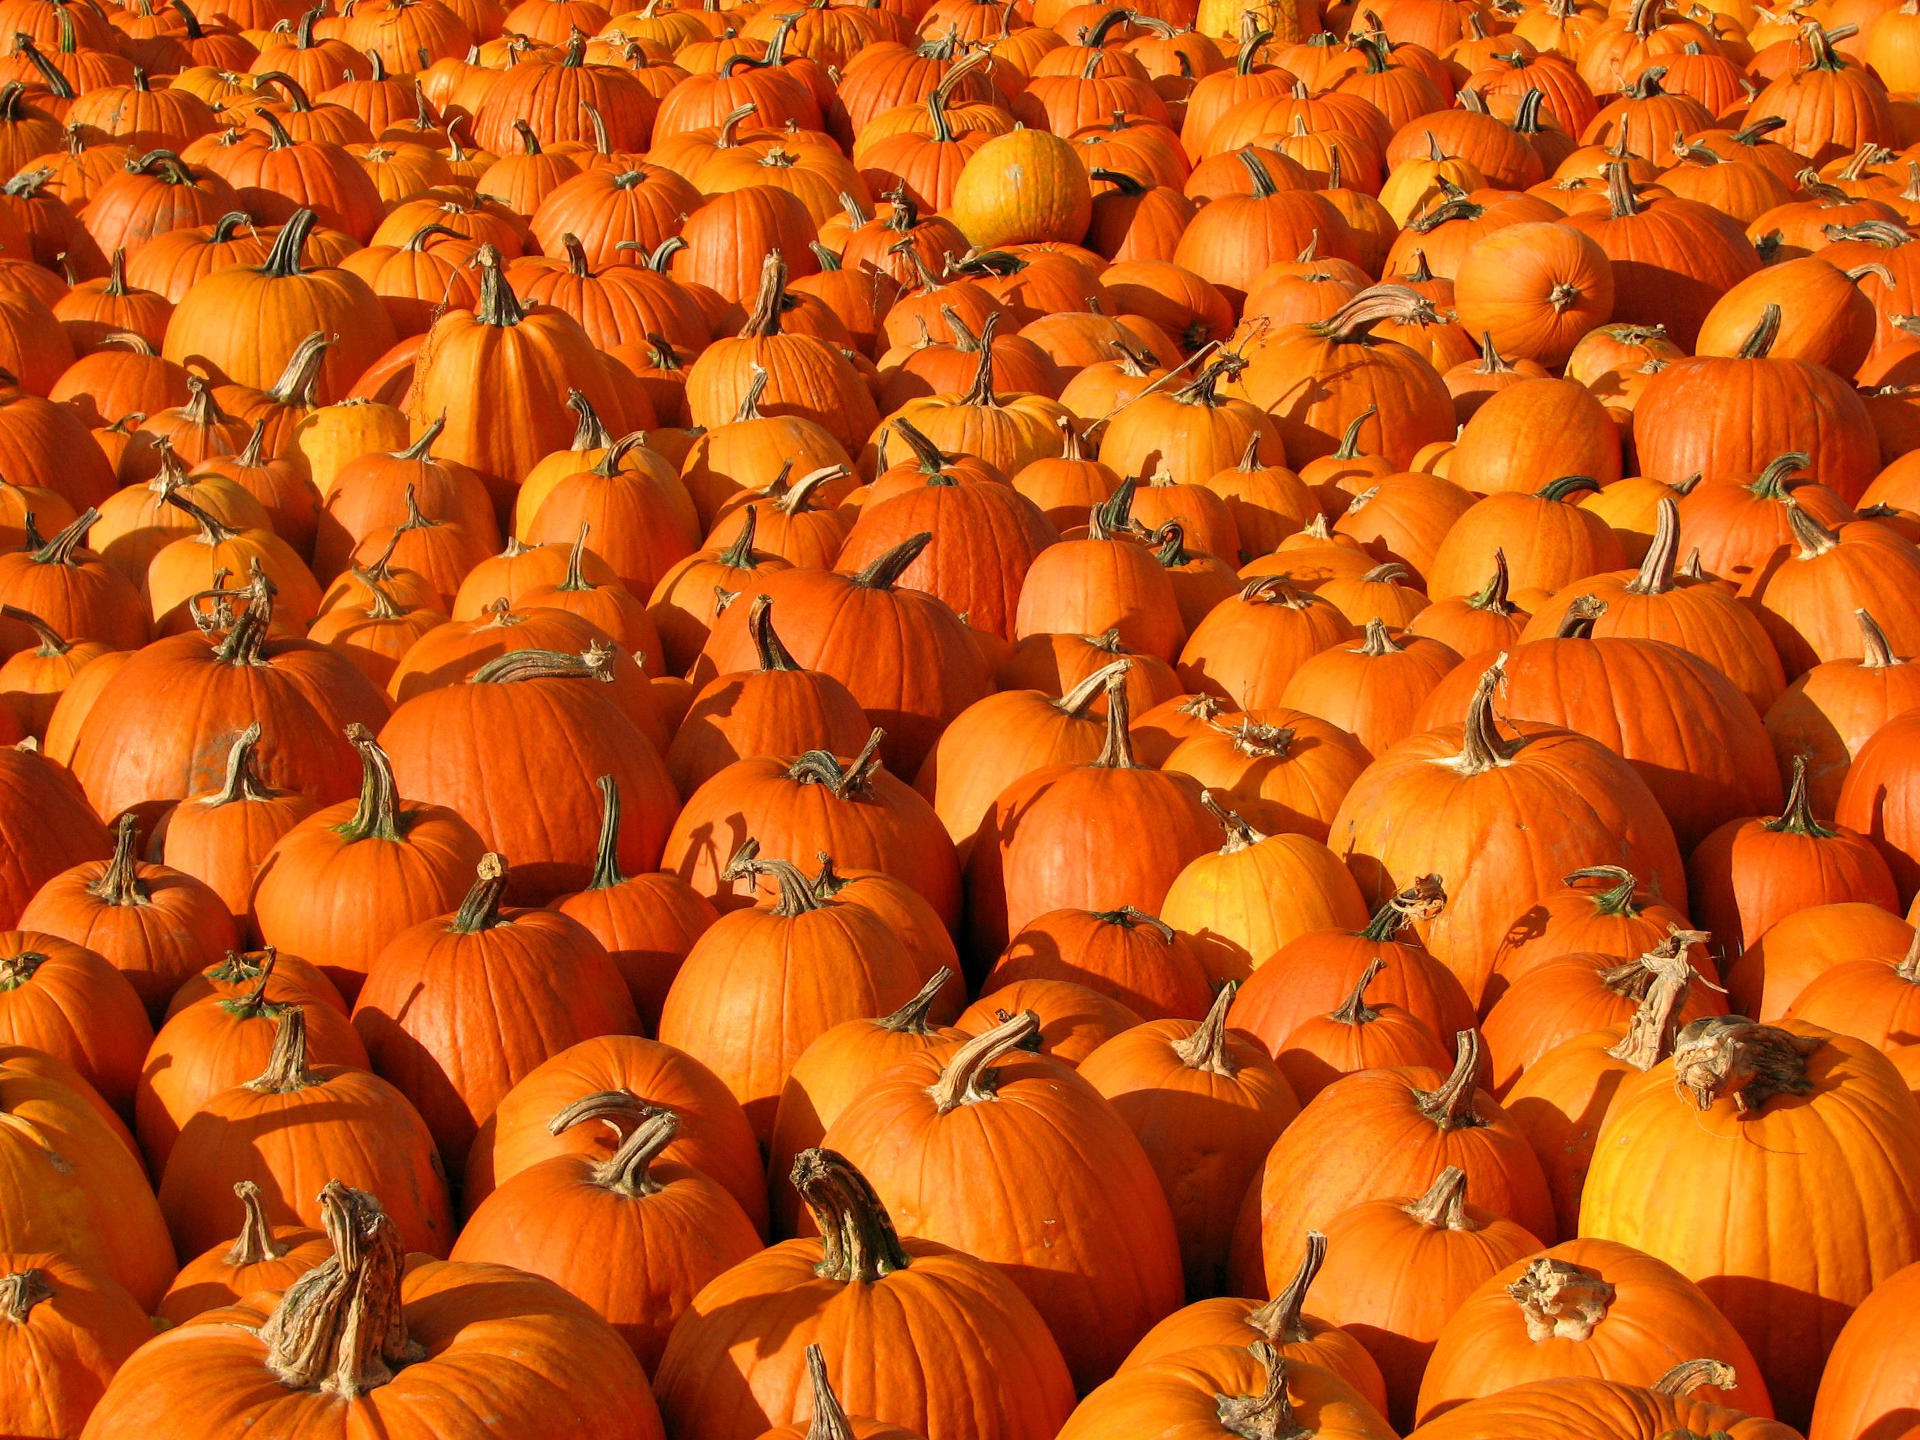 Free download wallpaper Food, Halloween, Pumpkin on your PC desktop